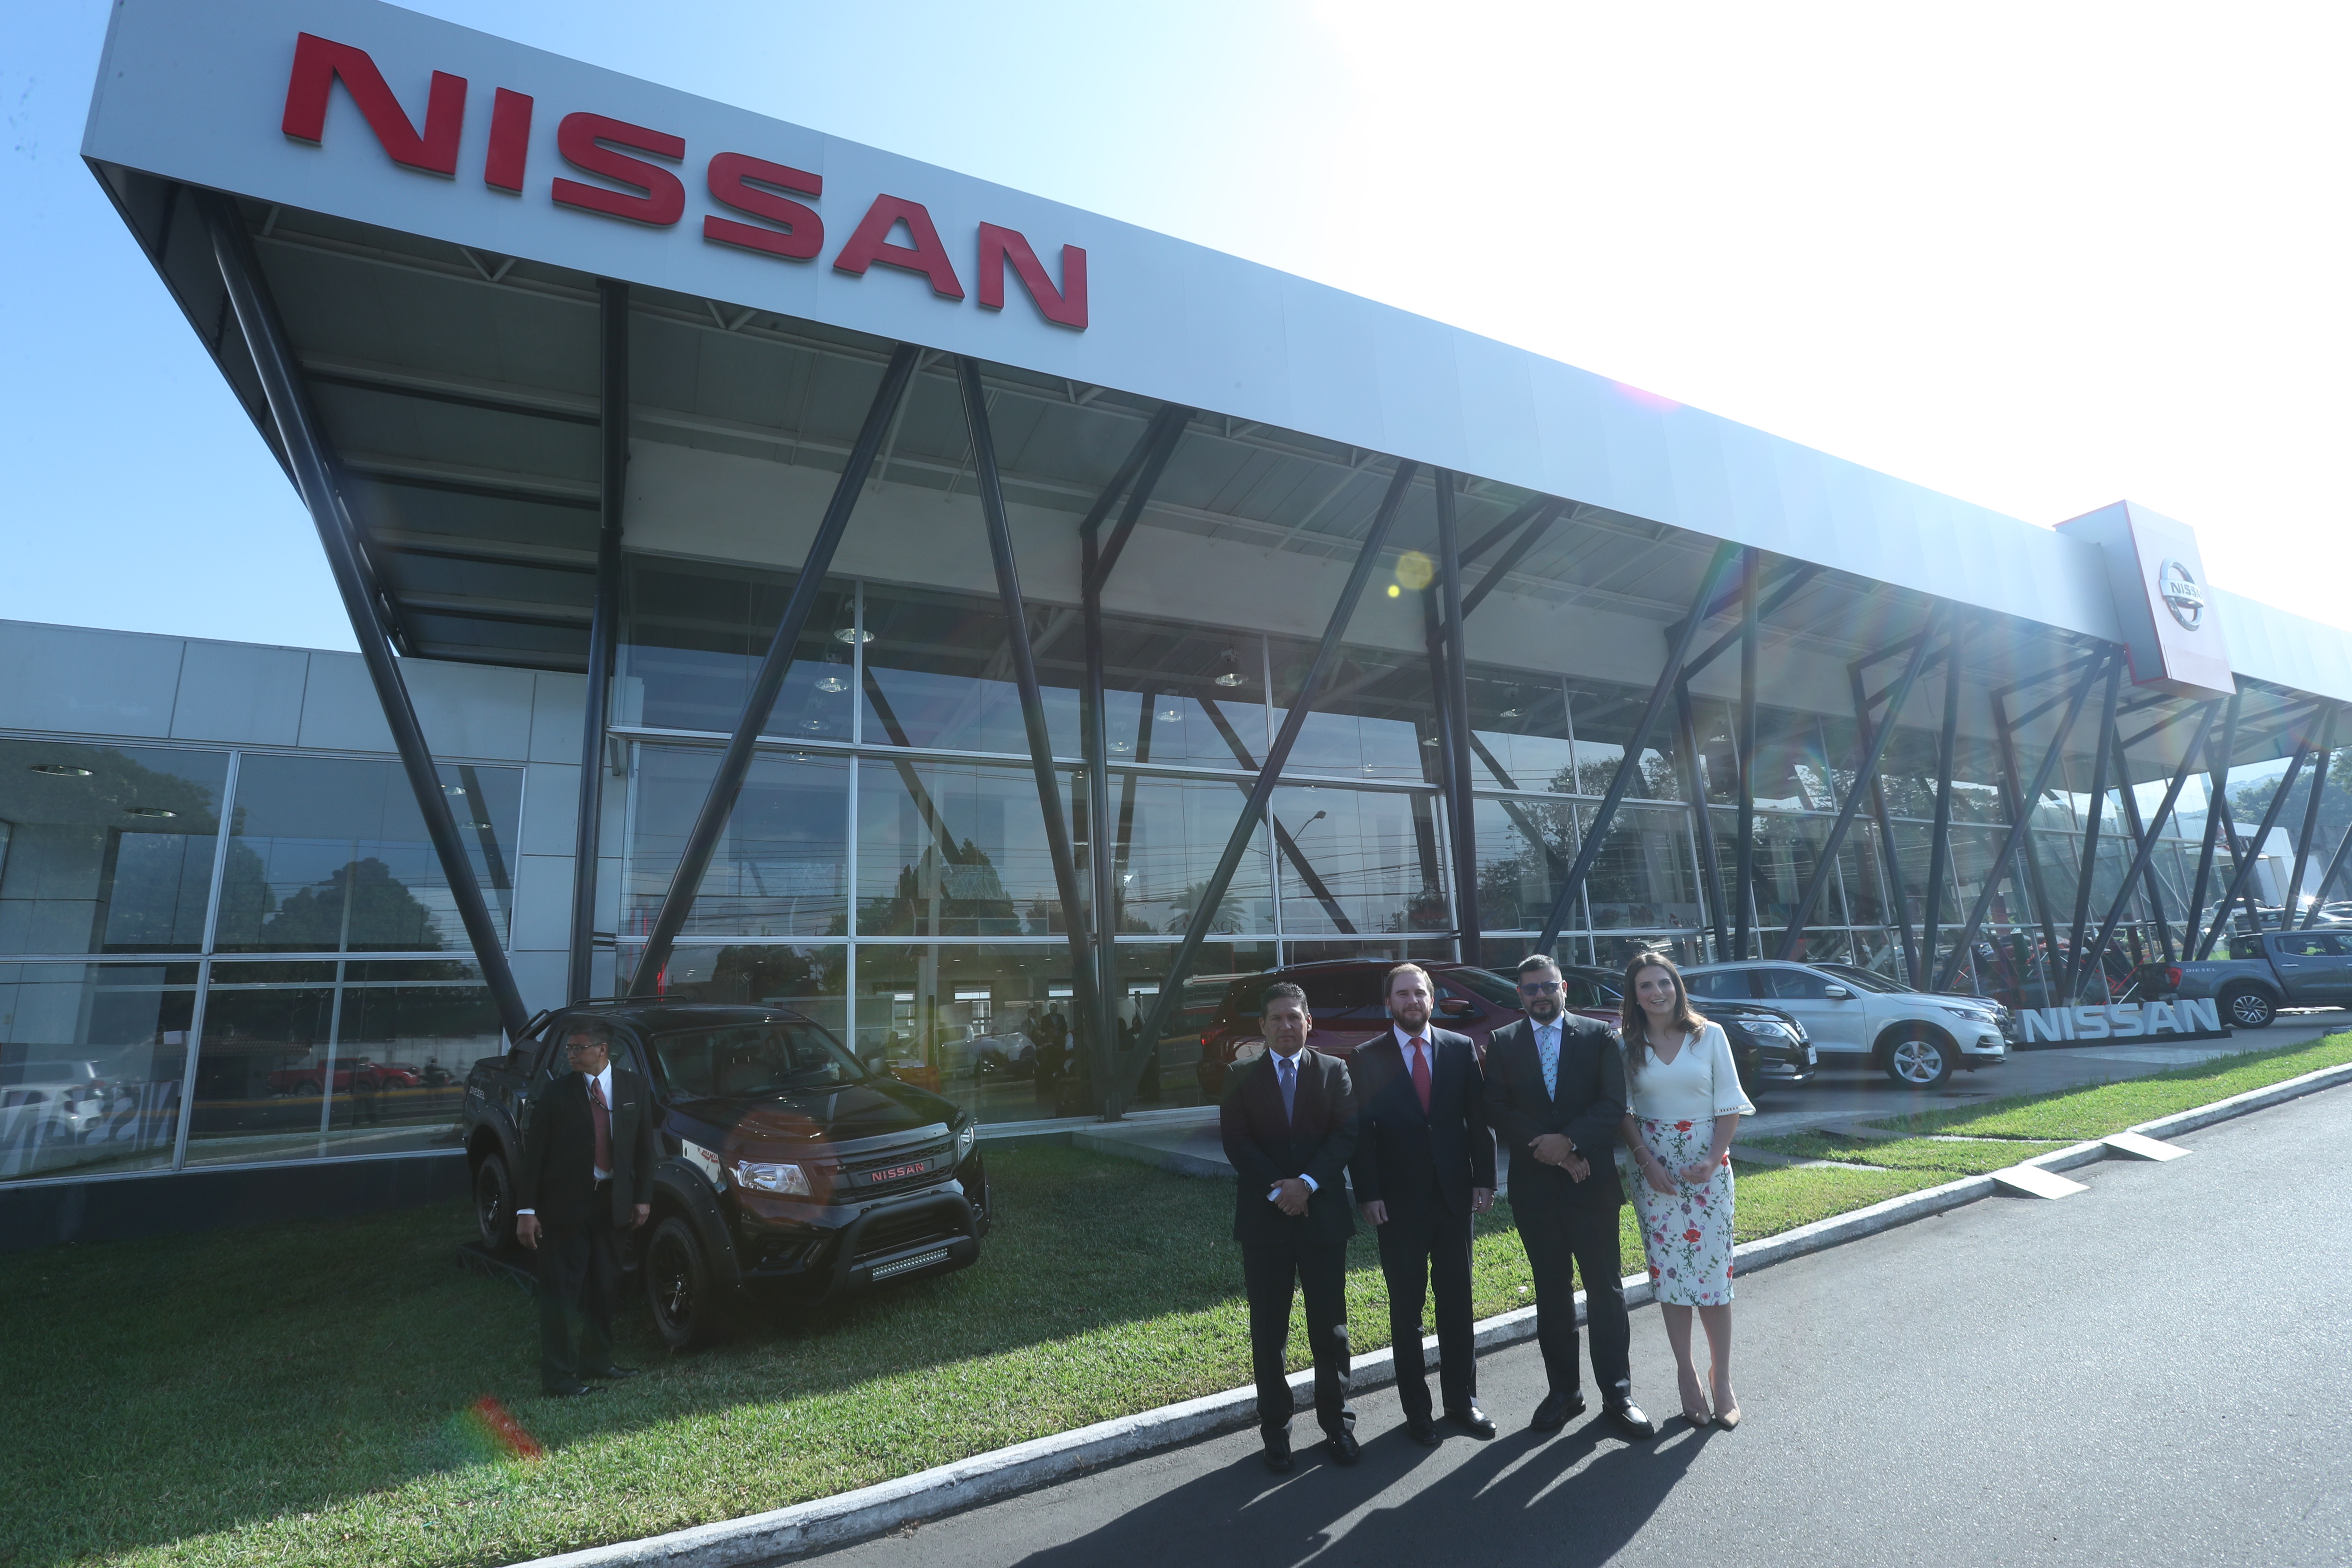 Gerentes de Excel presentaron el nuevo showroom de la marca japonesa Nissan. Foto Prensa Libre: Norvin Mendoza